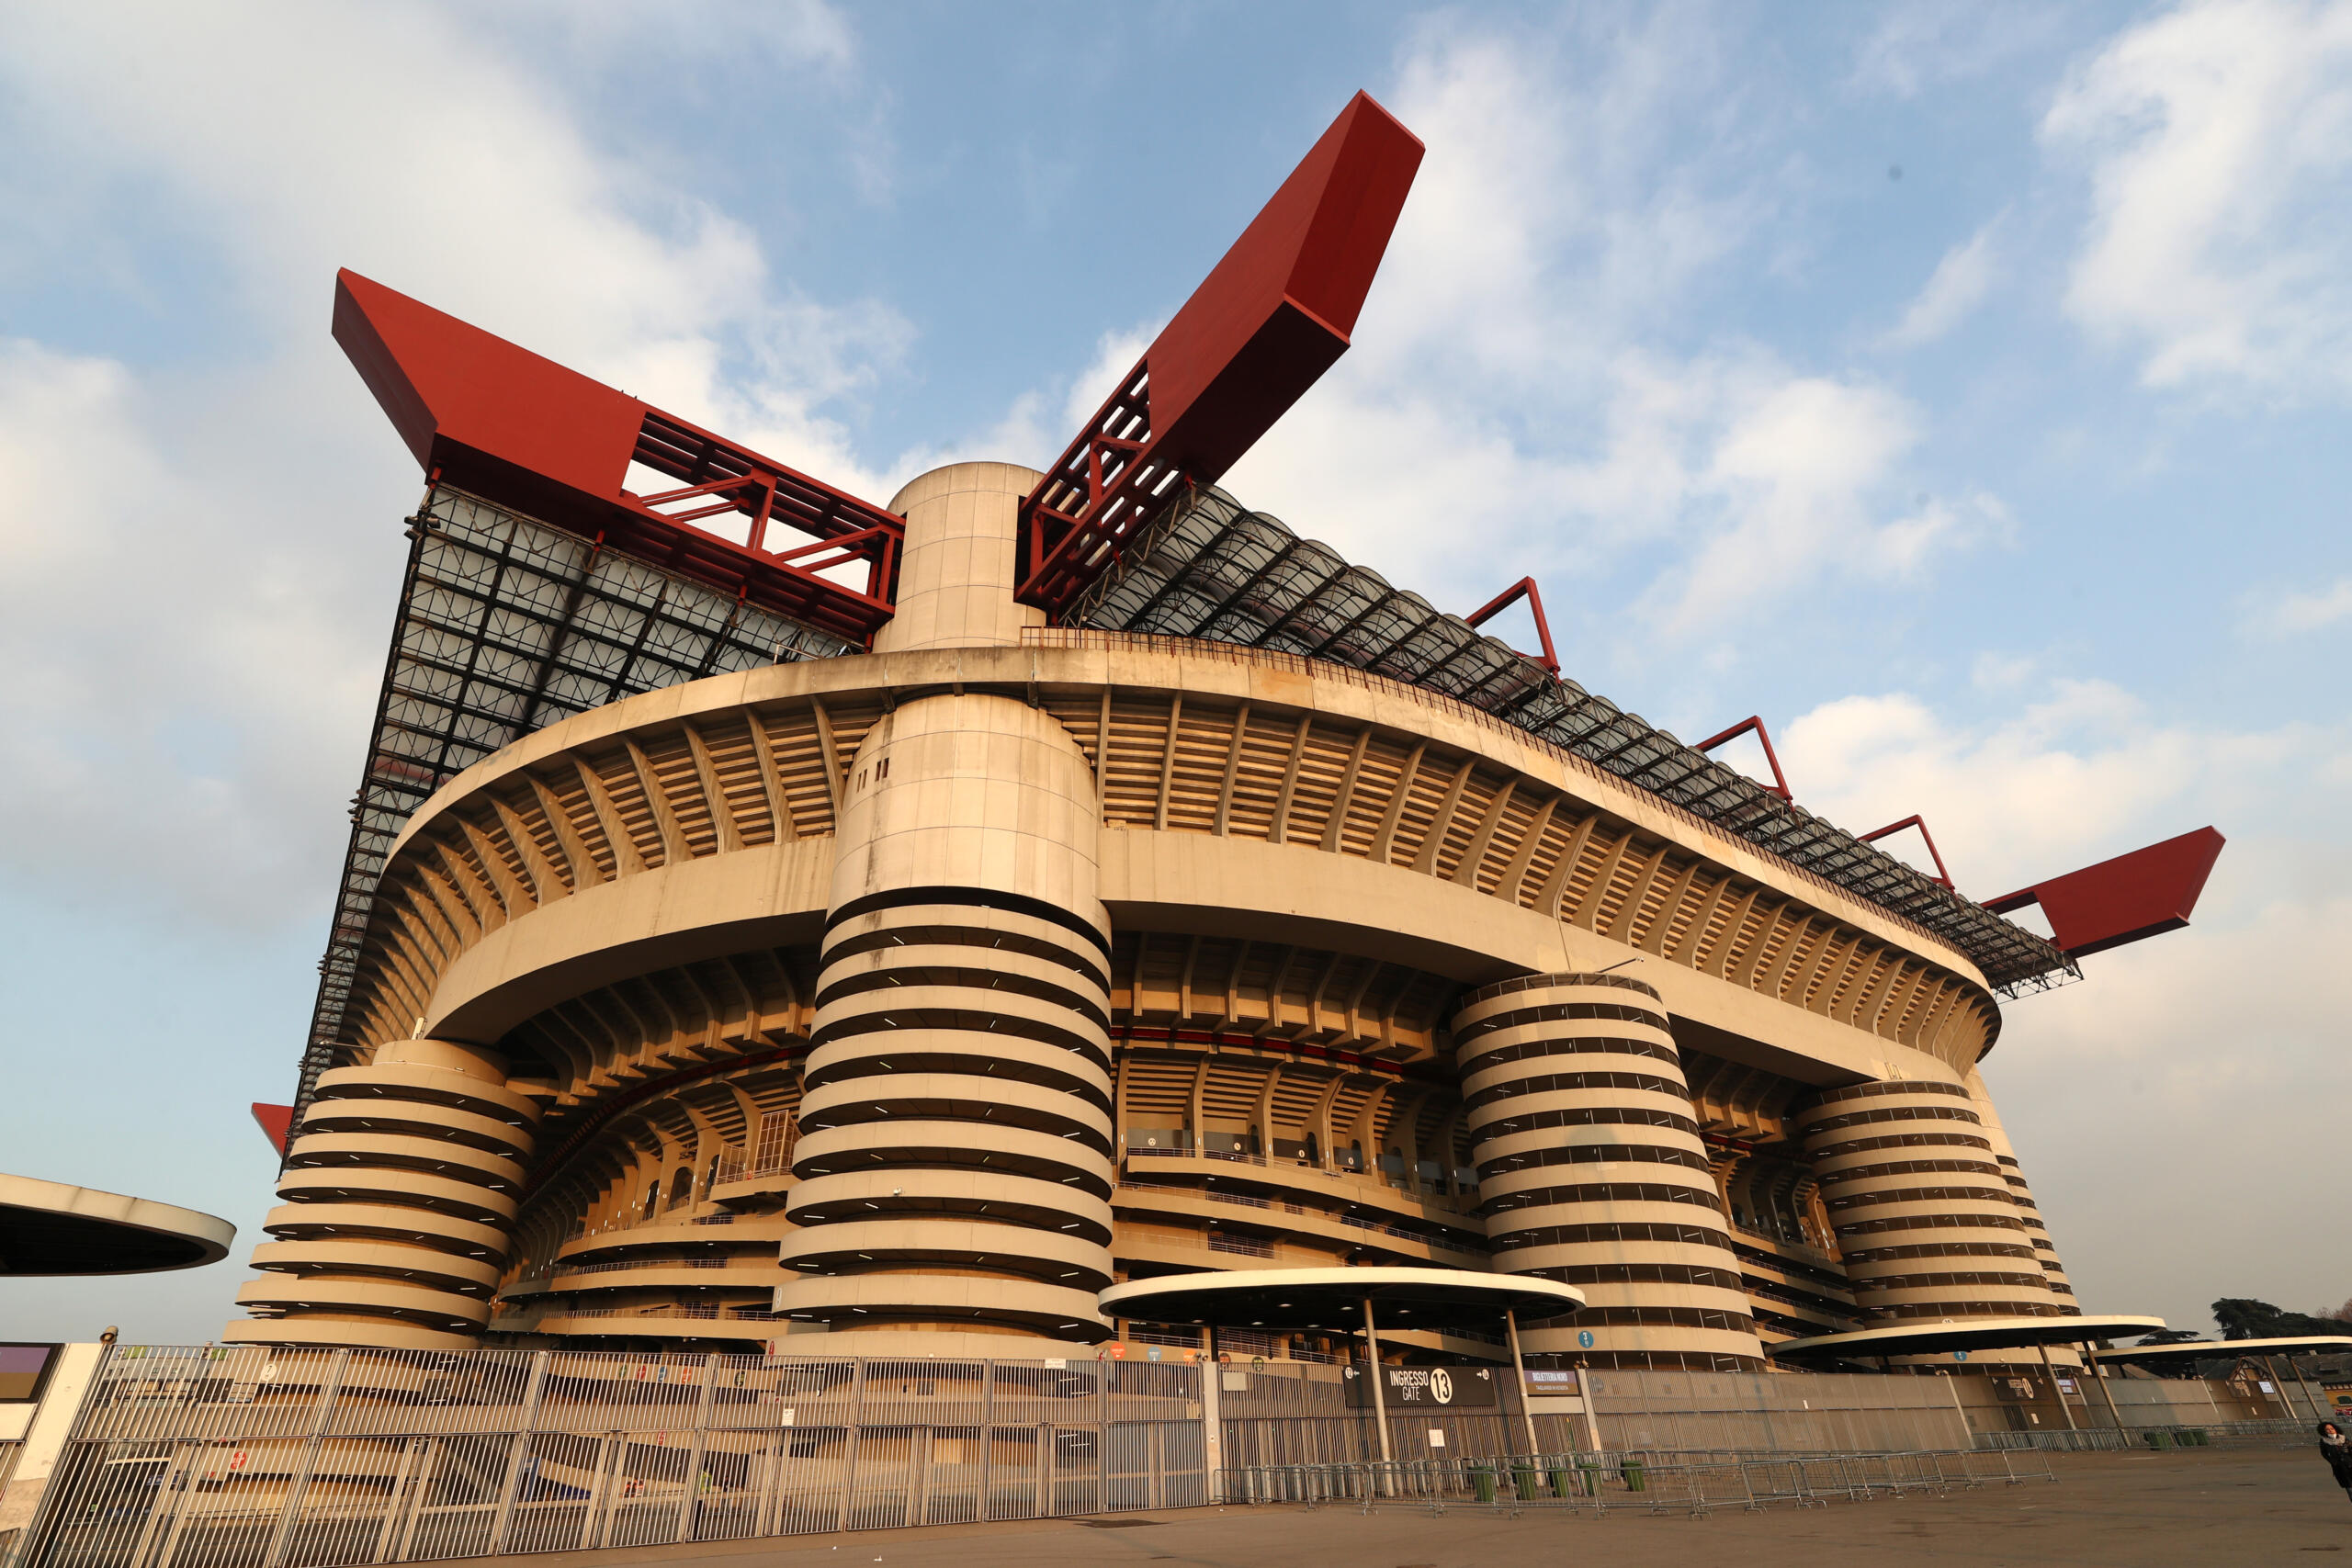 Stadio Milan Inter